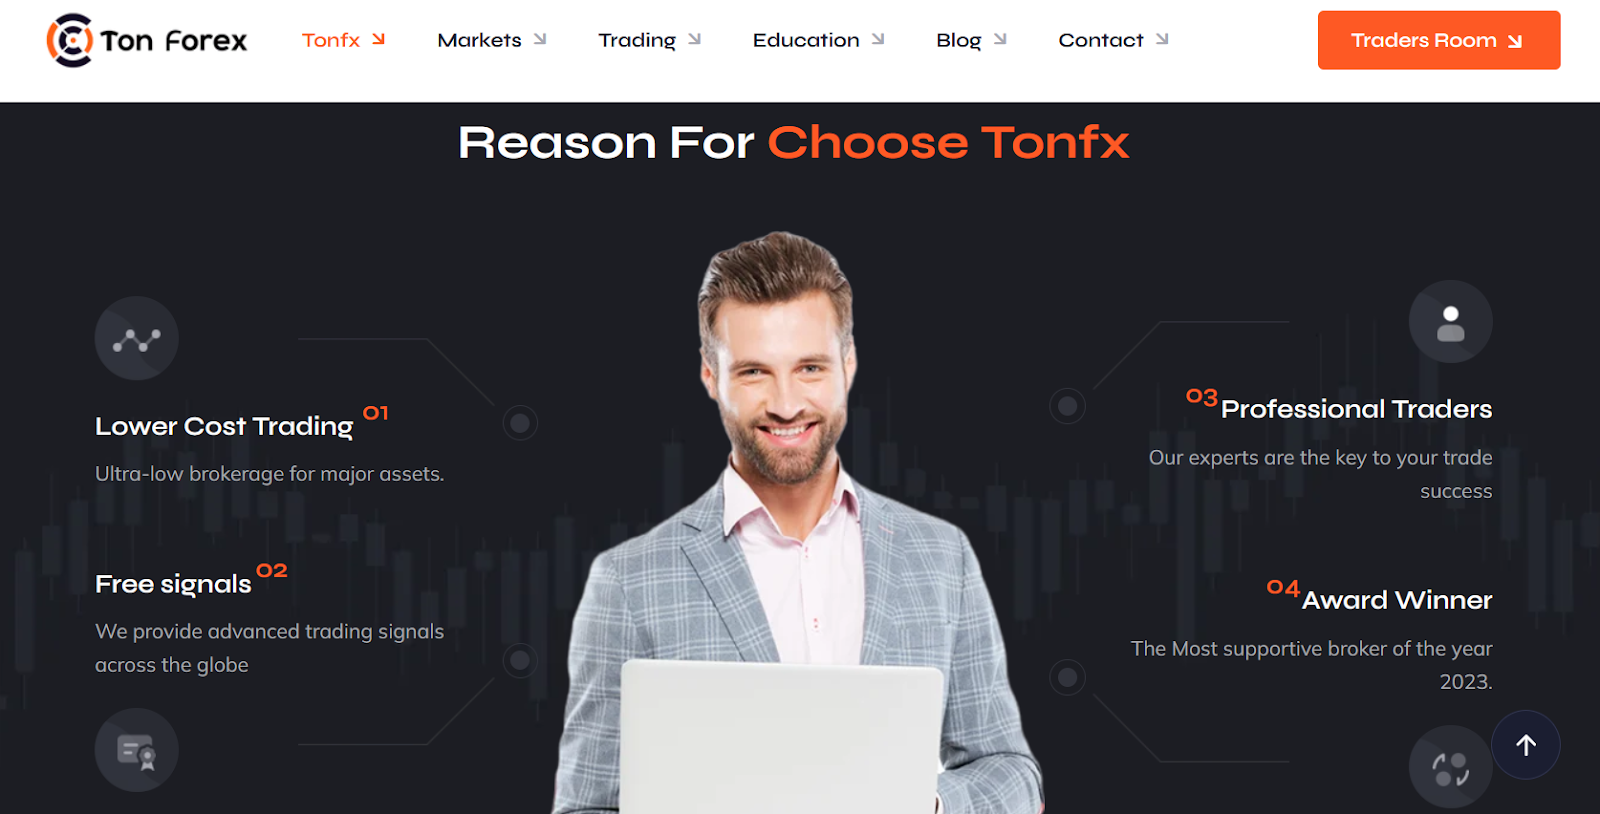 Tonfx.com